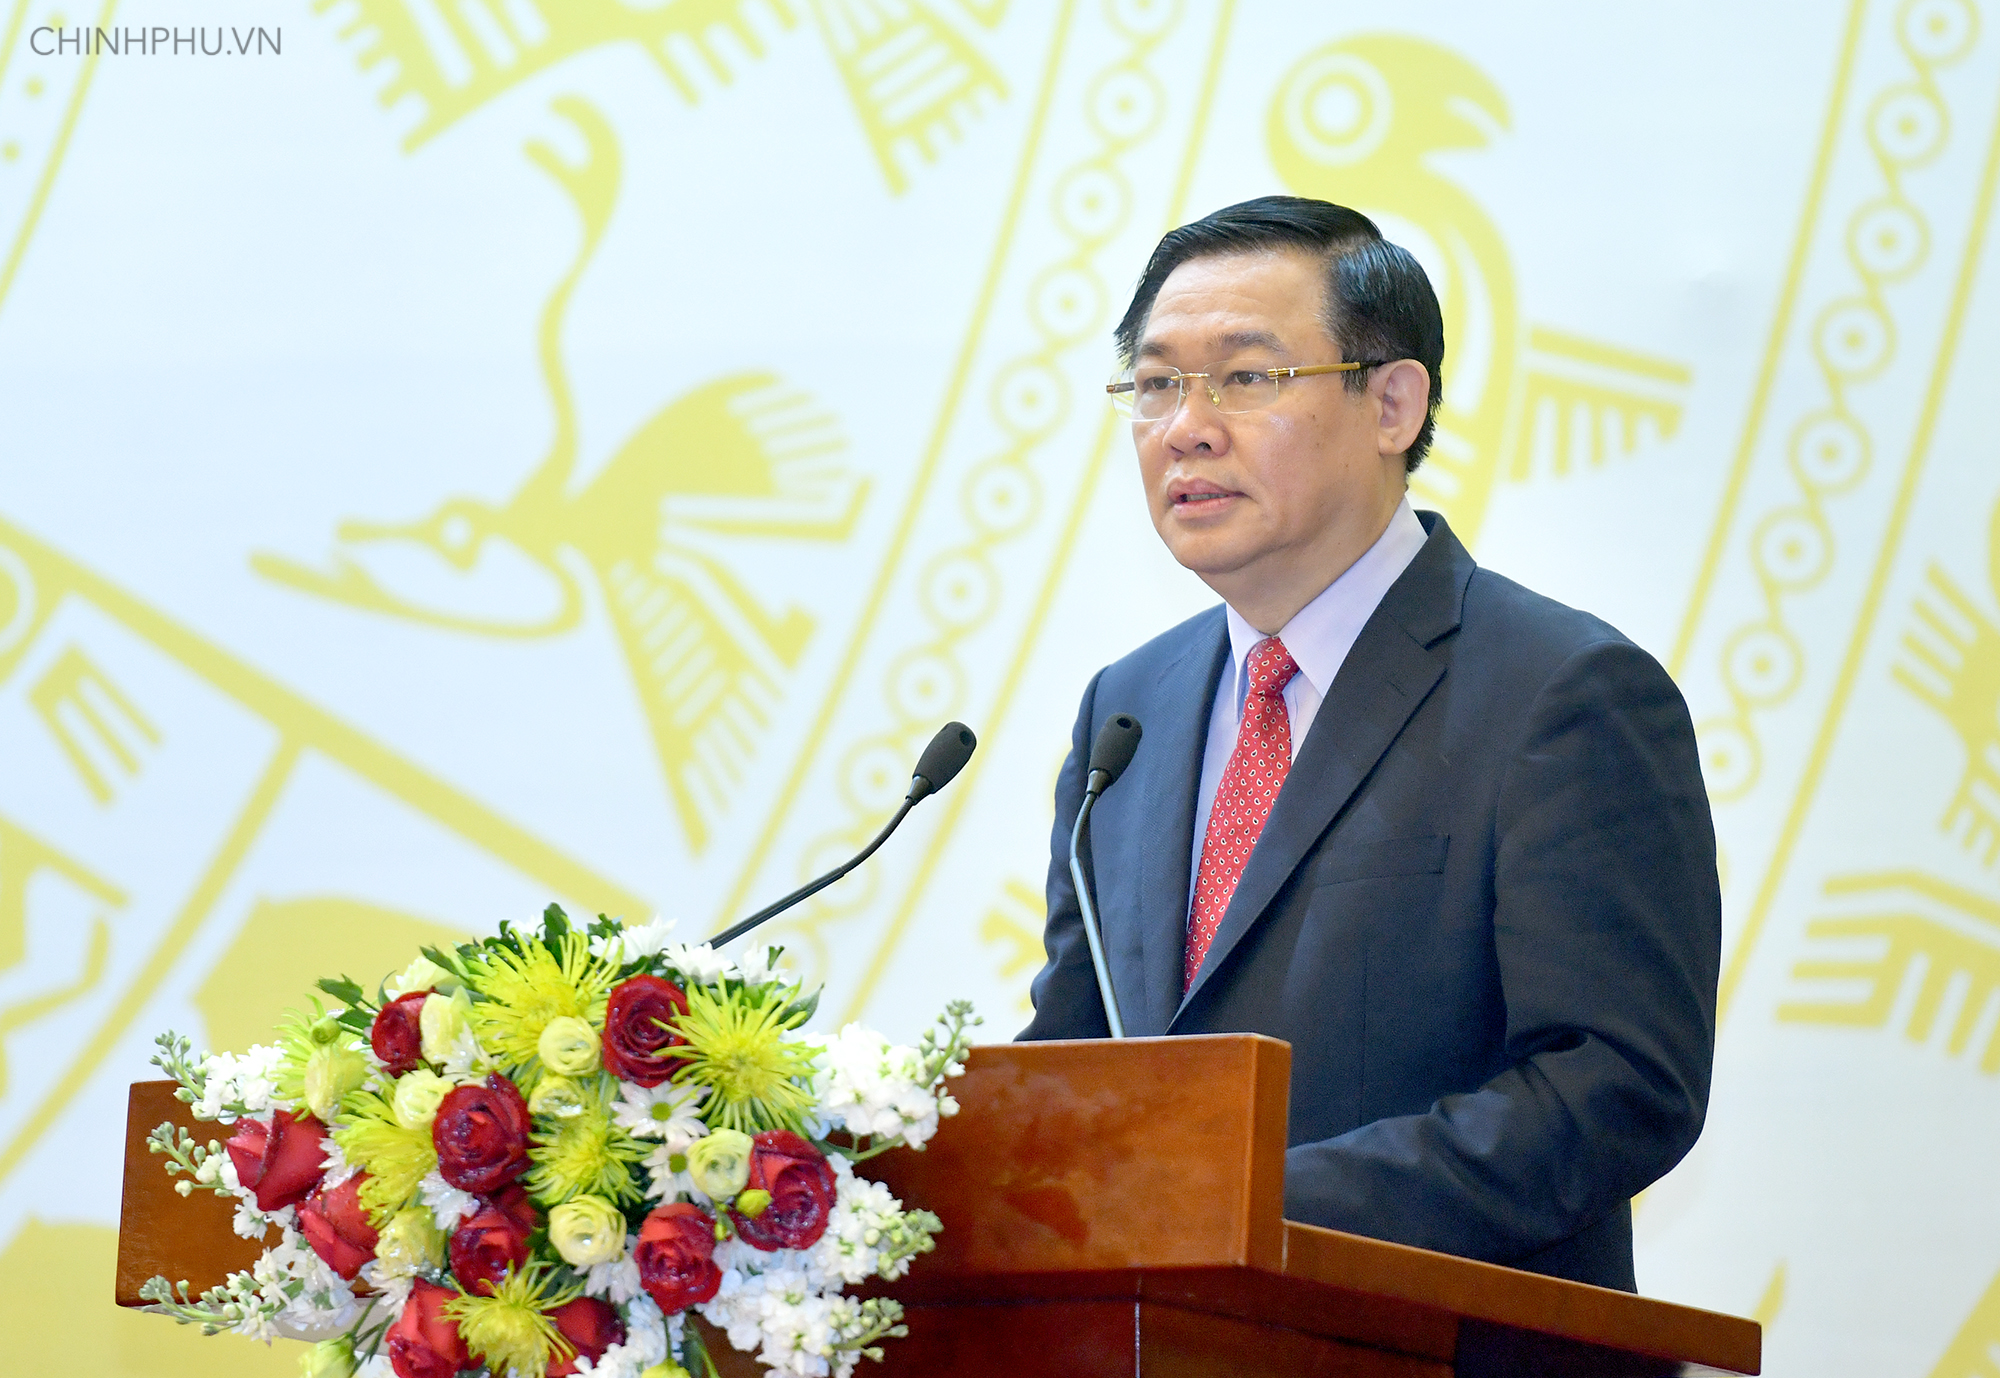 Phó Thủ tướng Vương Đình Huệ phát biểu khai mạc Hội nghị.